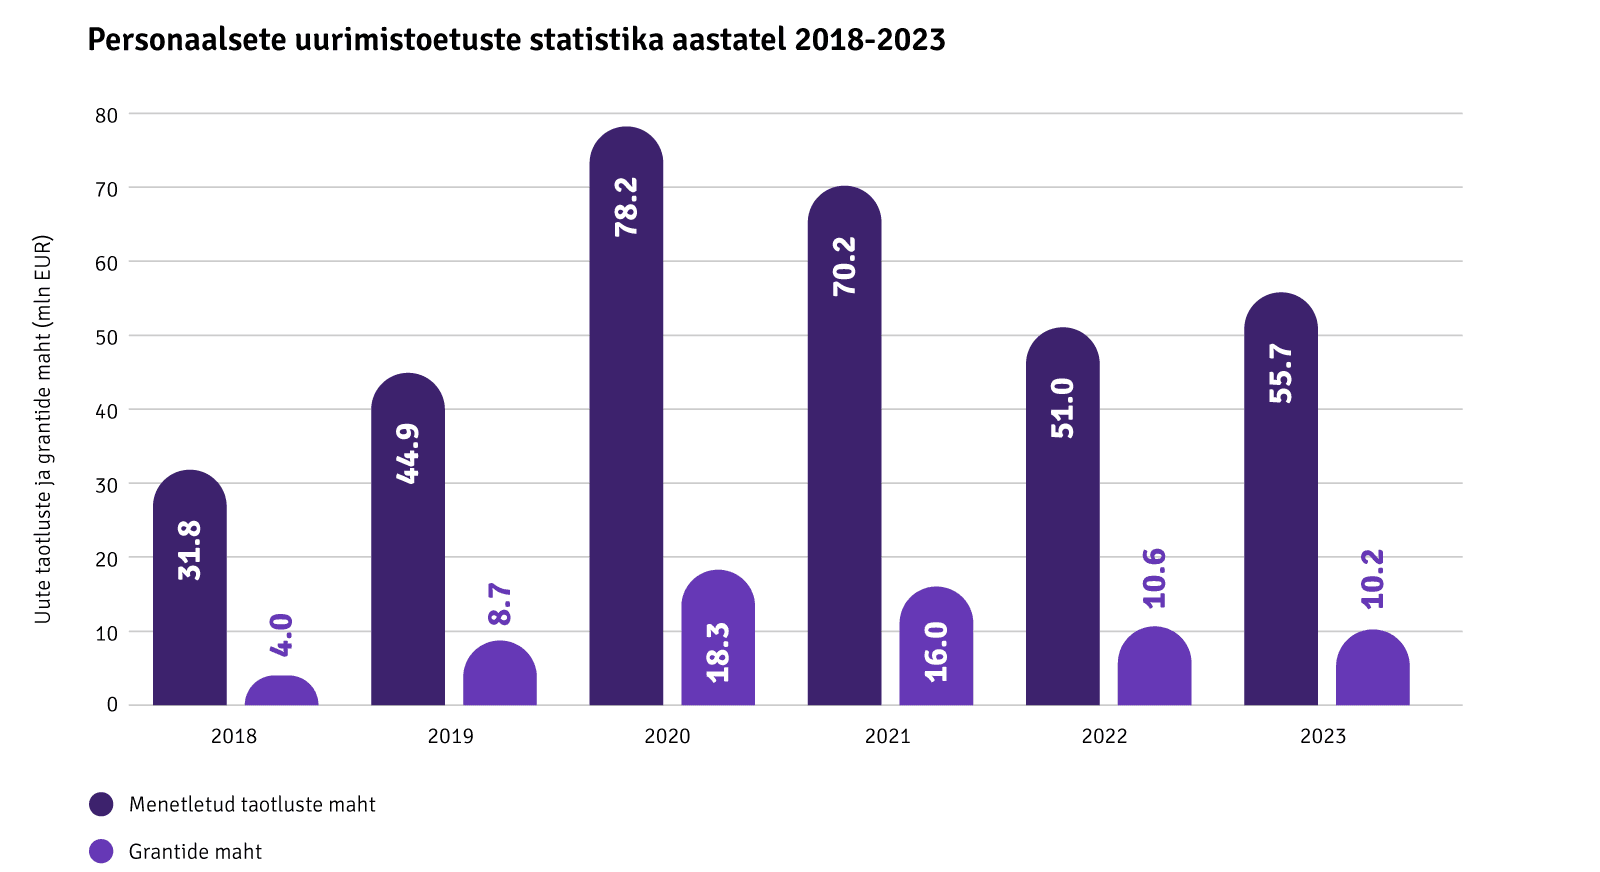 Personaalsete uurimistoetuste statistika aastatel 2018-2023